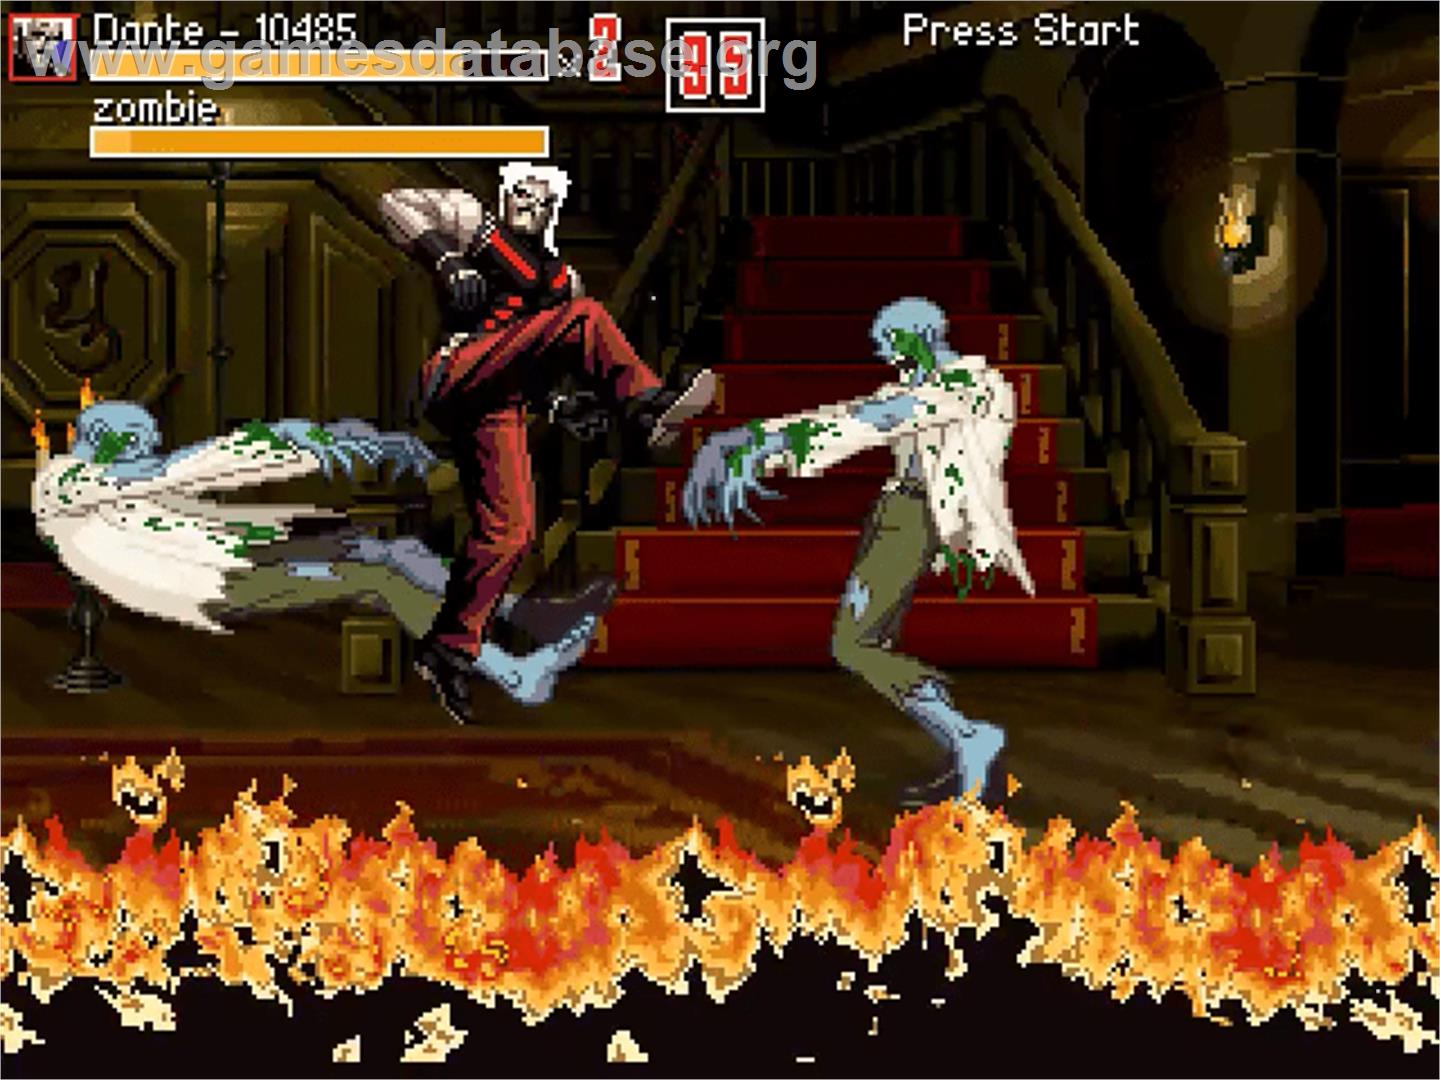 Dante Must Kill - OpenBOR - Artwork - In Game